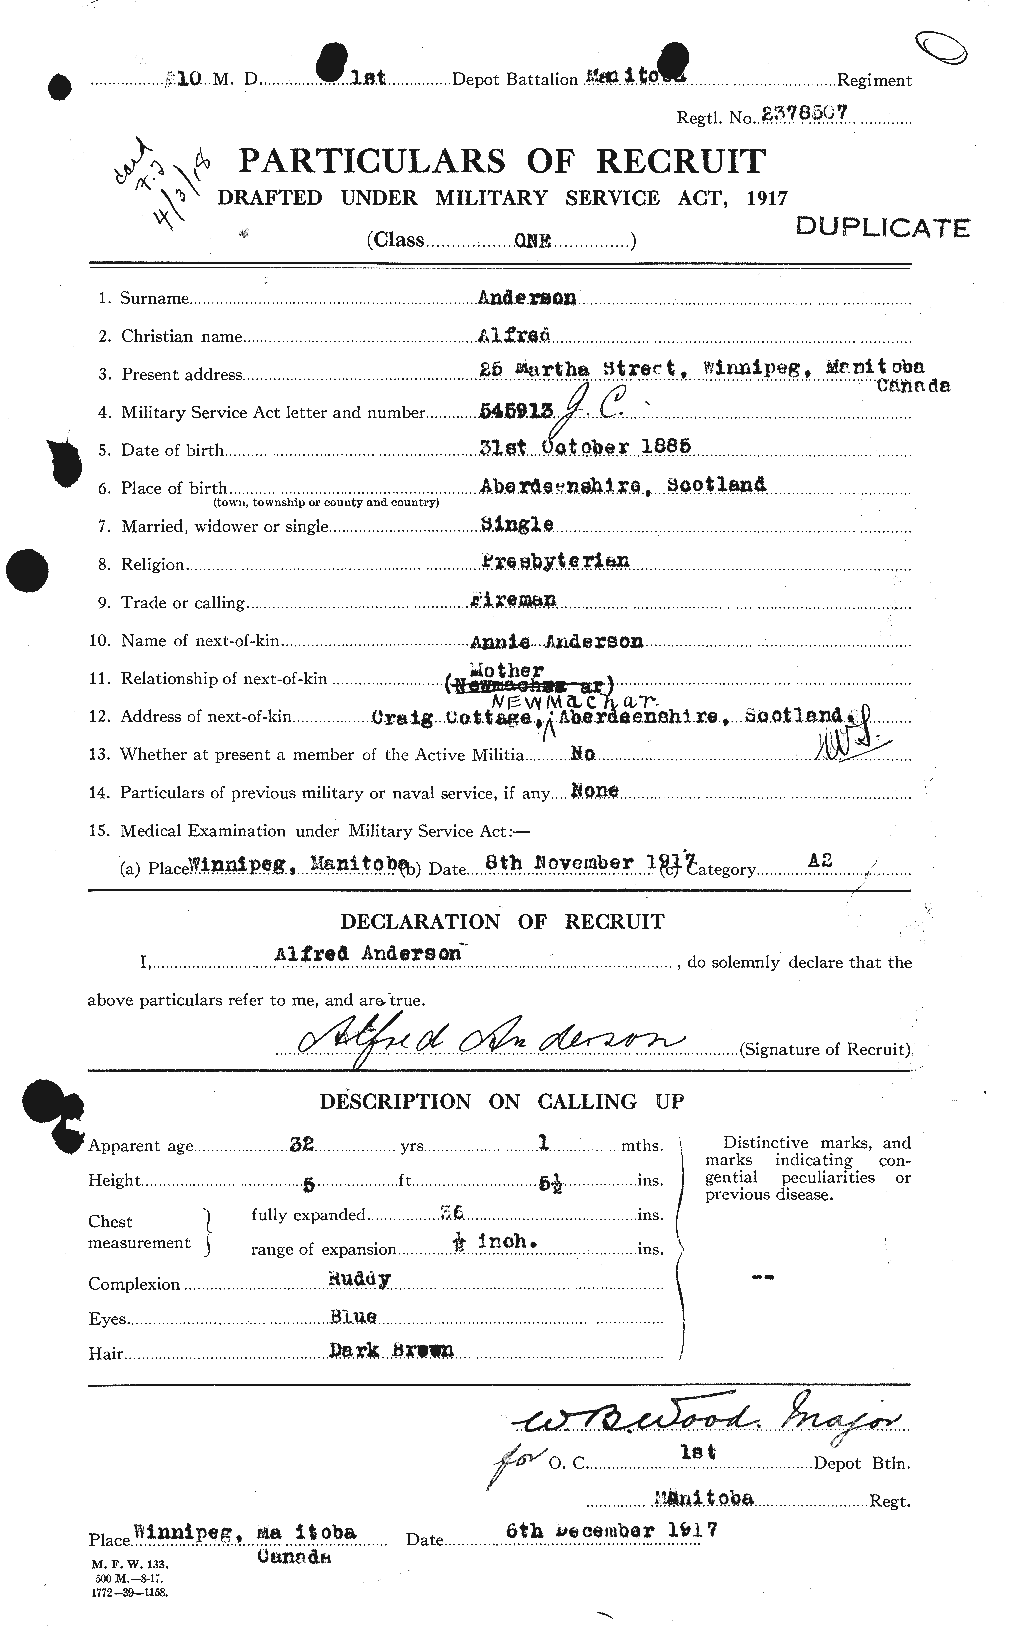 Dossiers du Personnel de la Première Guerre mondiale - CEC 209465a